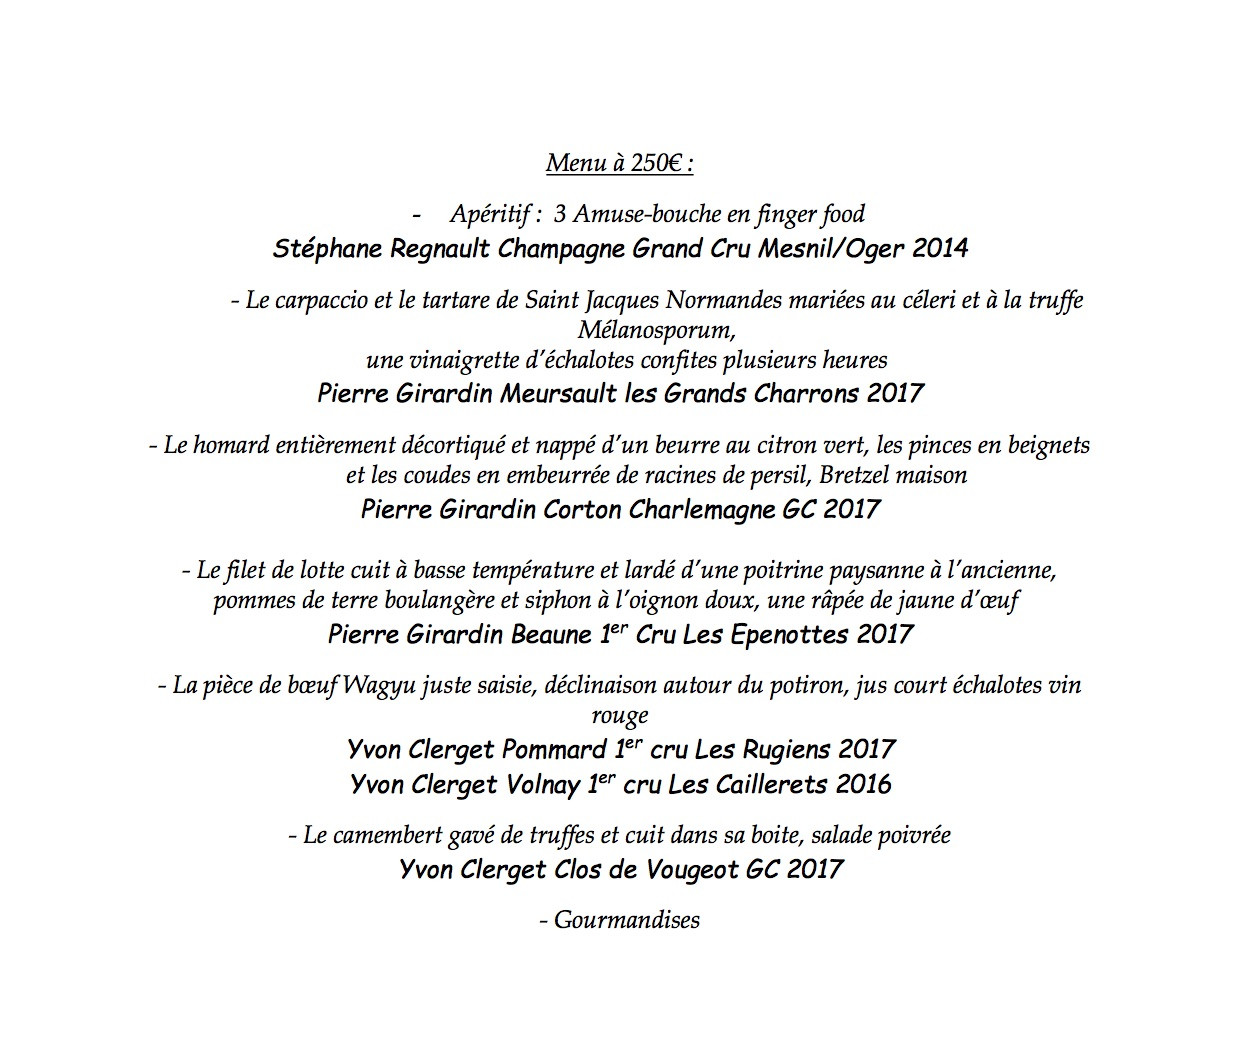 Un menu unique pour mettre en valeur les crus des jeunes viticulteurs bourguignons. (Crédit: Restaurant Clairefontaine)